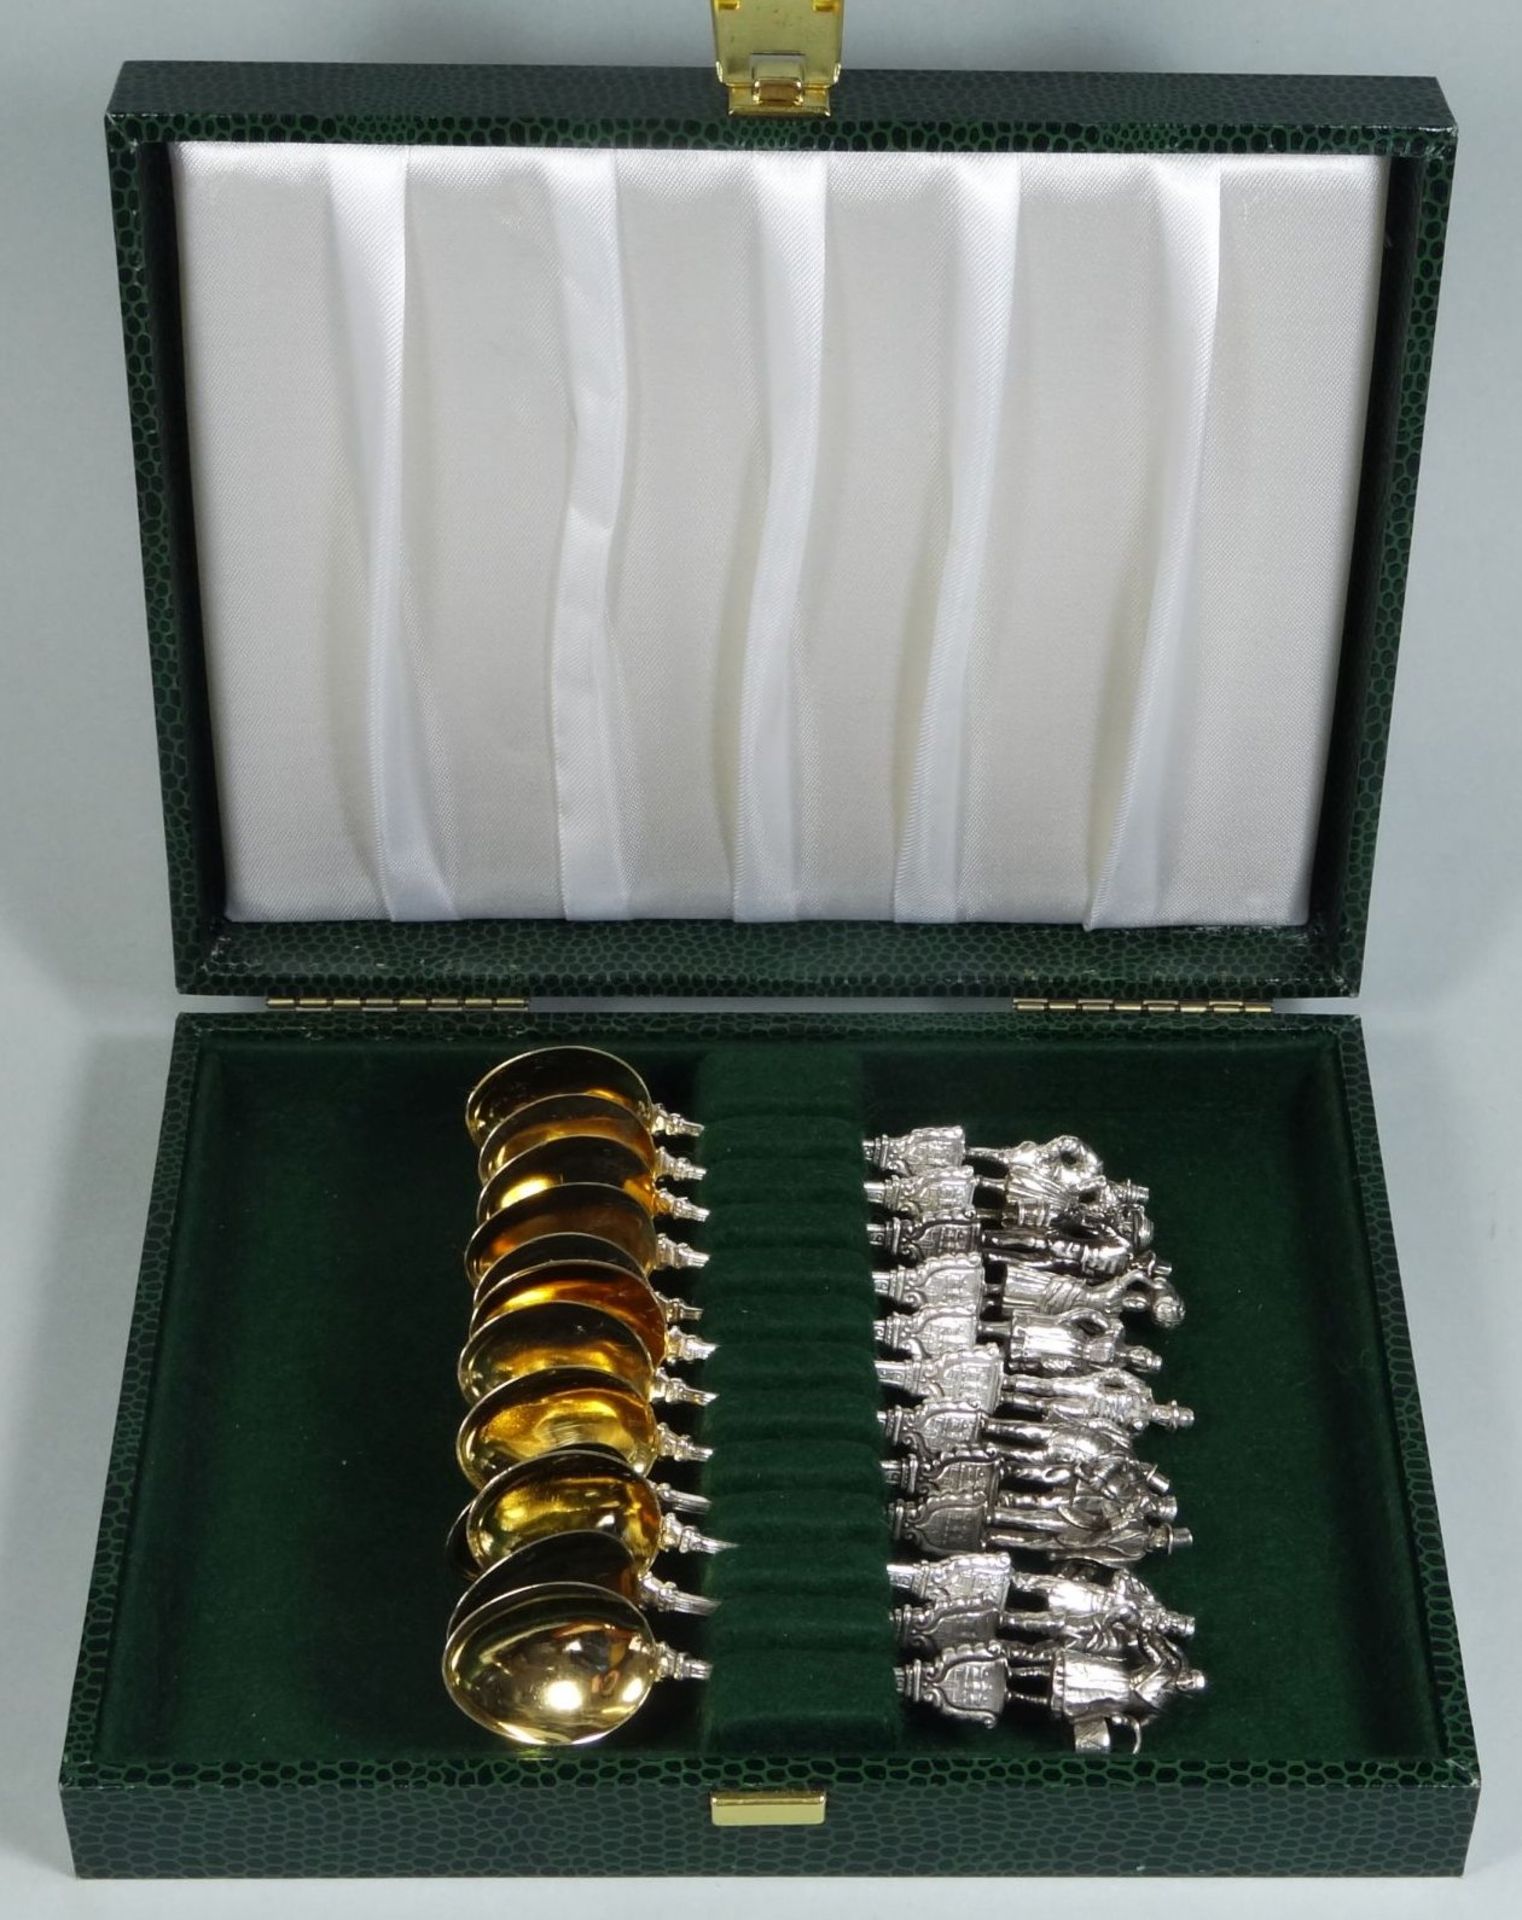 12 figürliche Moccalöffel, Silber-800-, Hamburg, Laffe vergoldet, L-10 cm, zus. 156 g